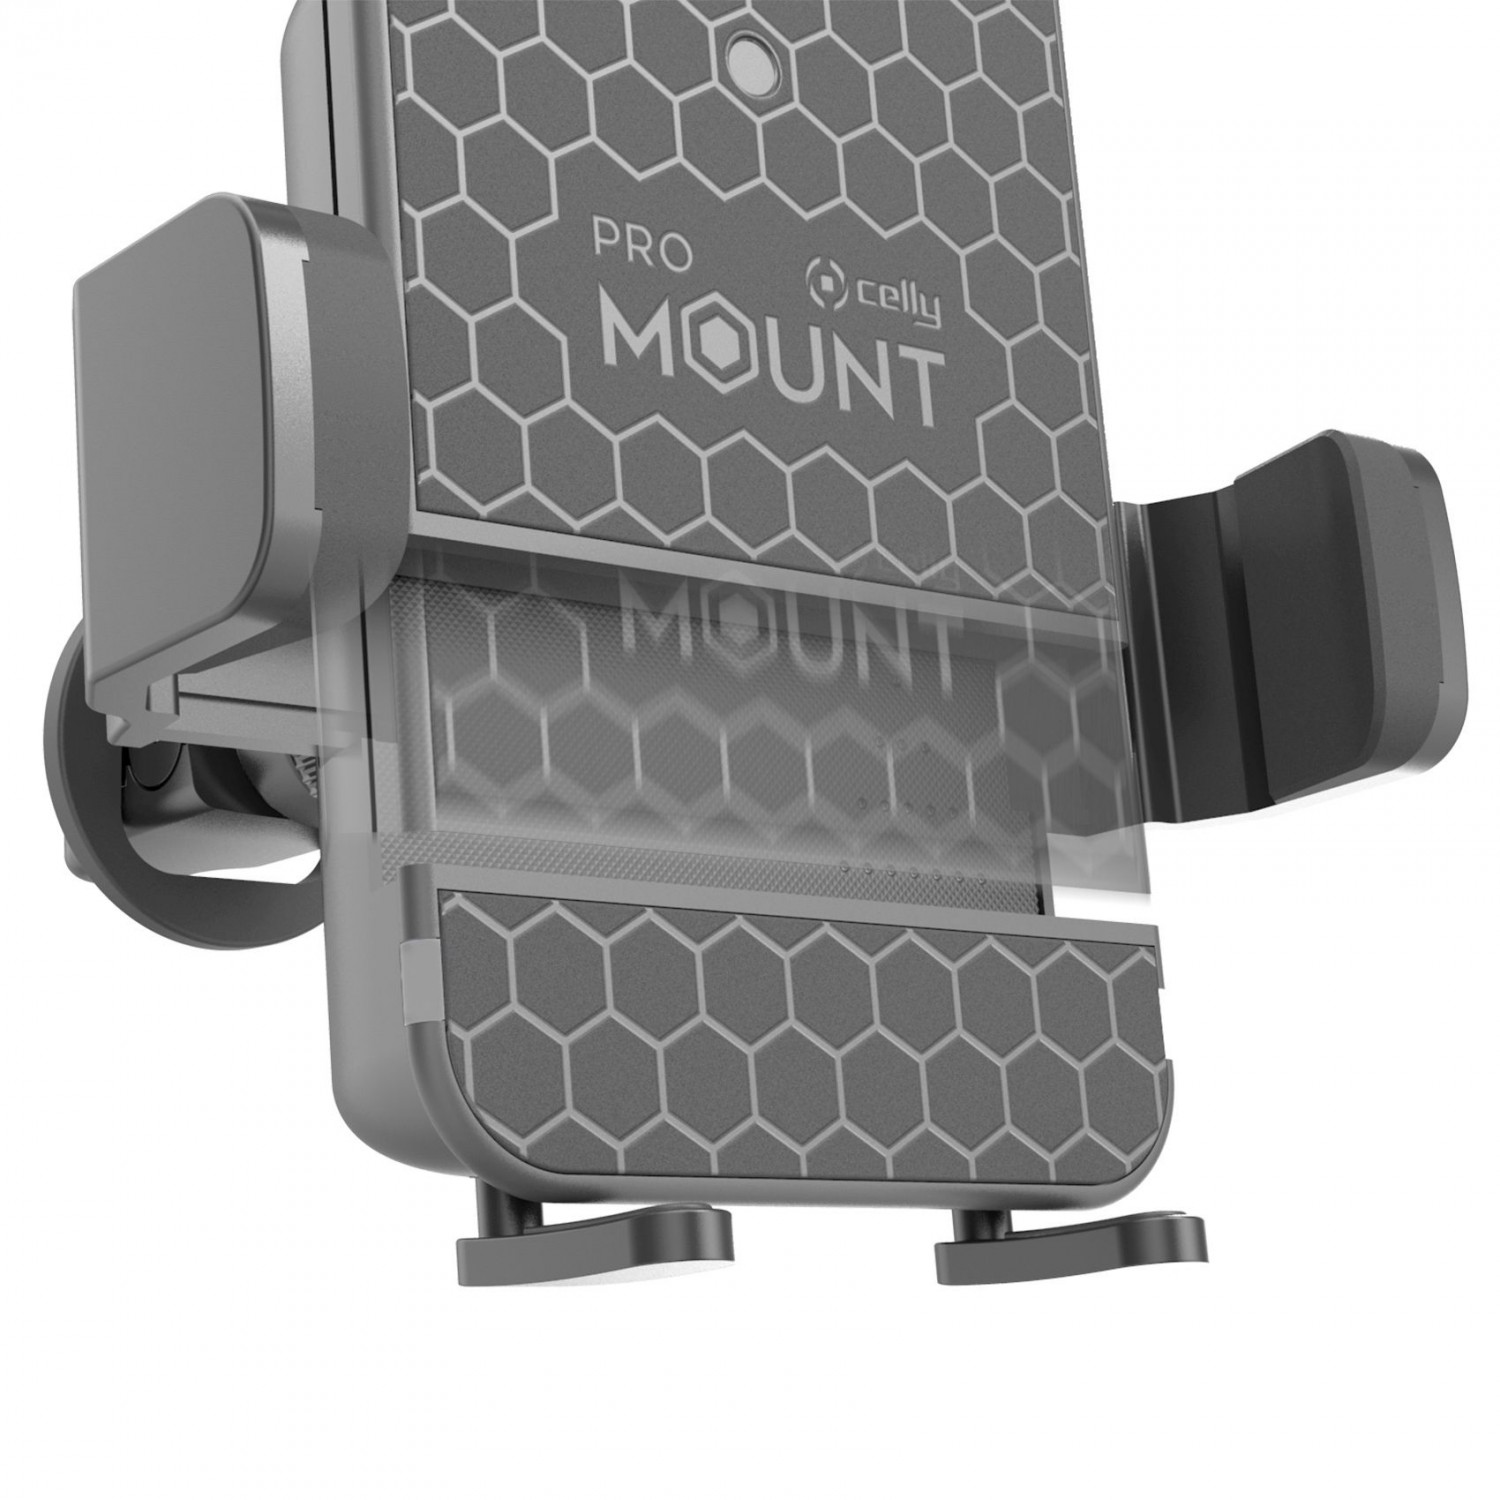 Univerzální držák mobilního telefonu s bezdrátovým nabíjením CELLY Mount Charge, černý